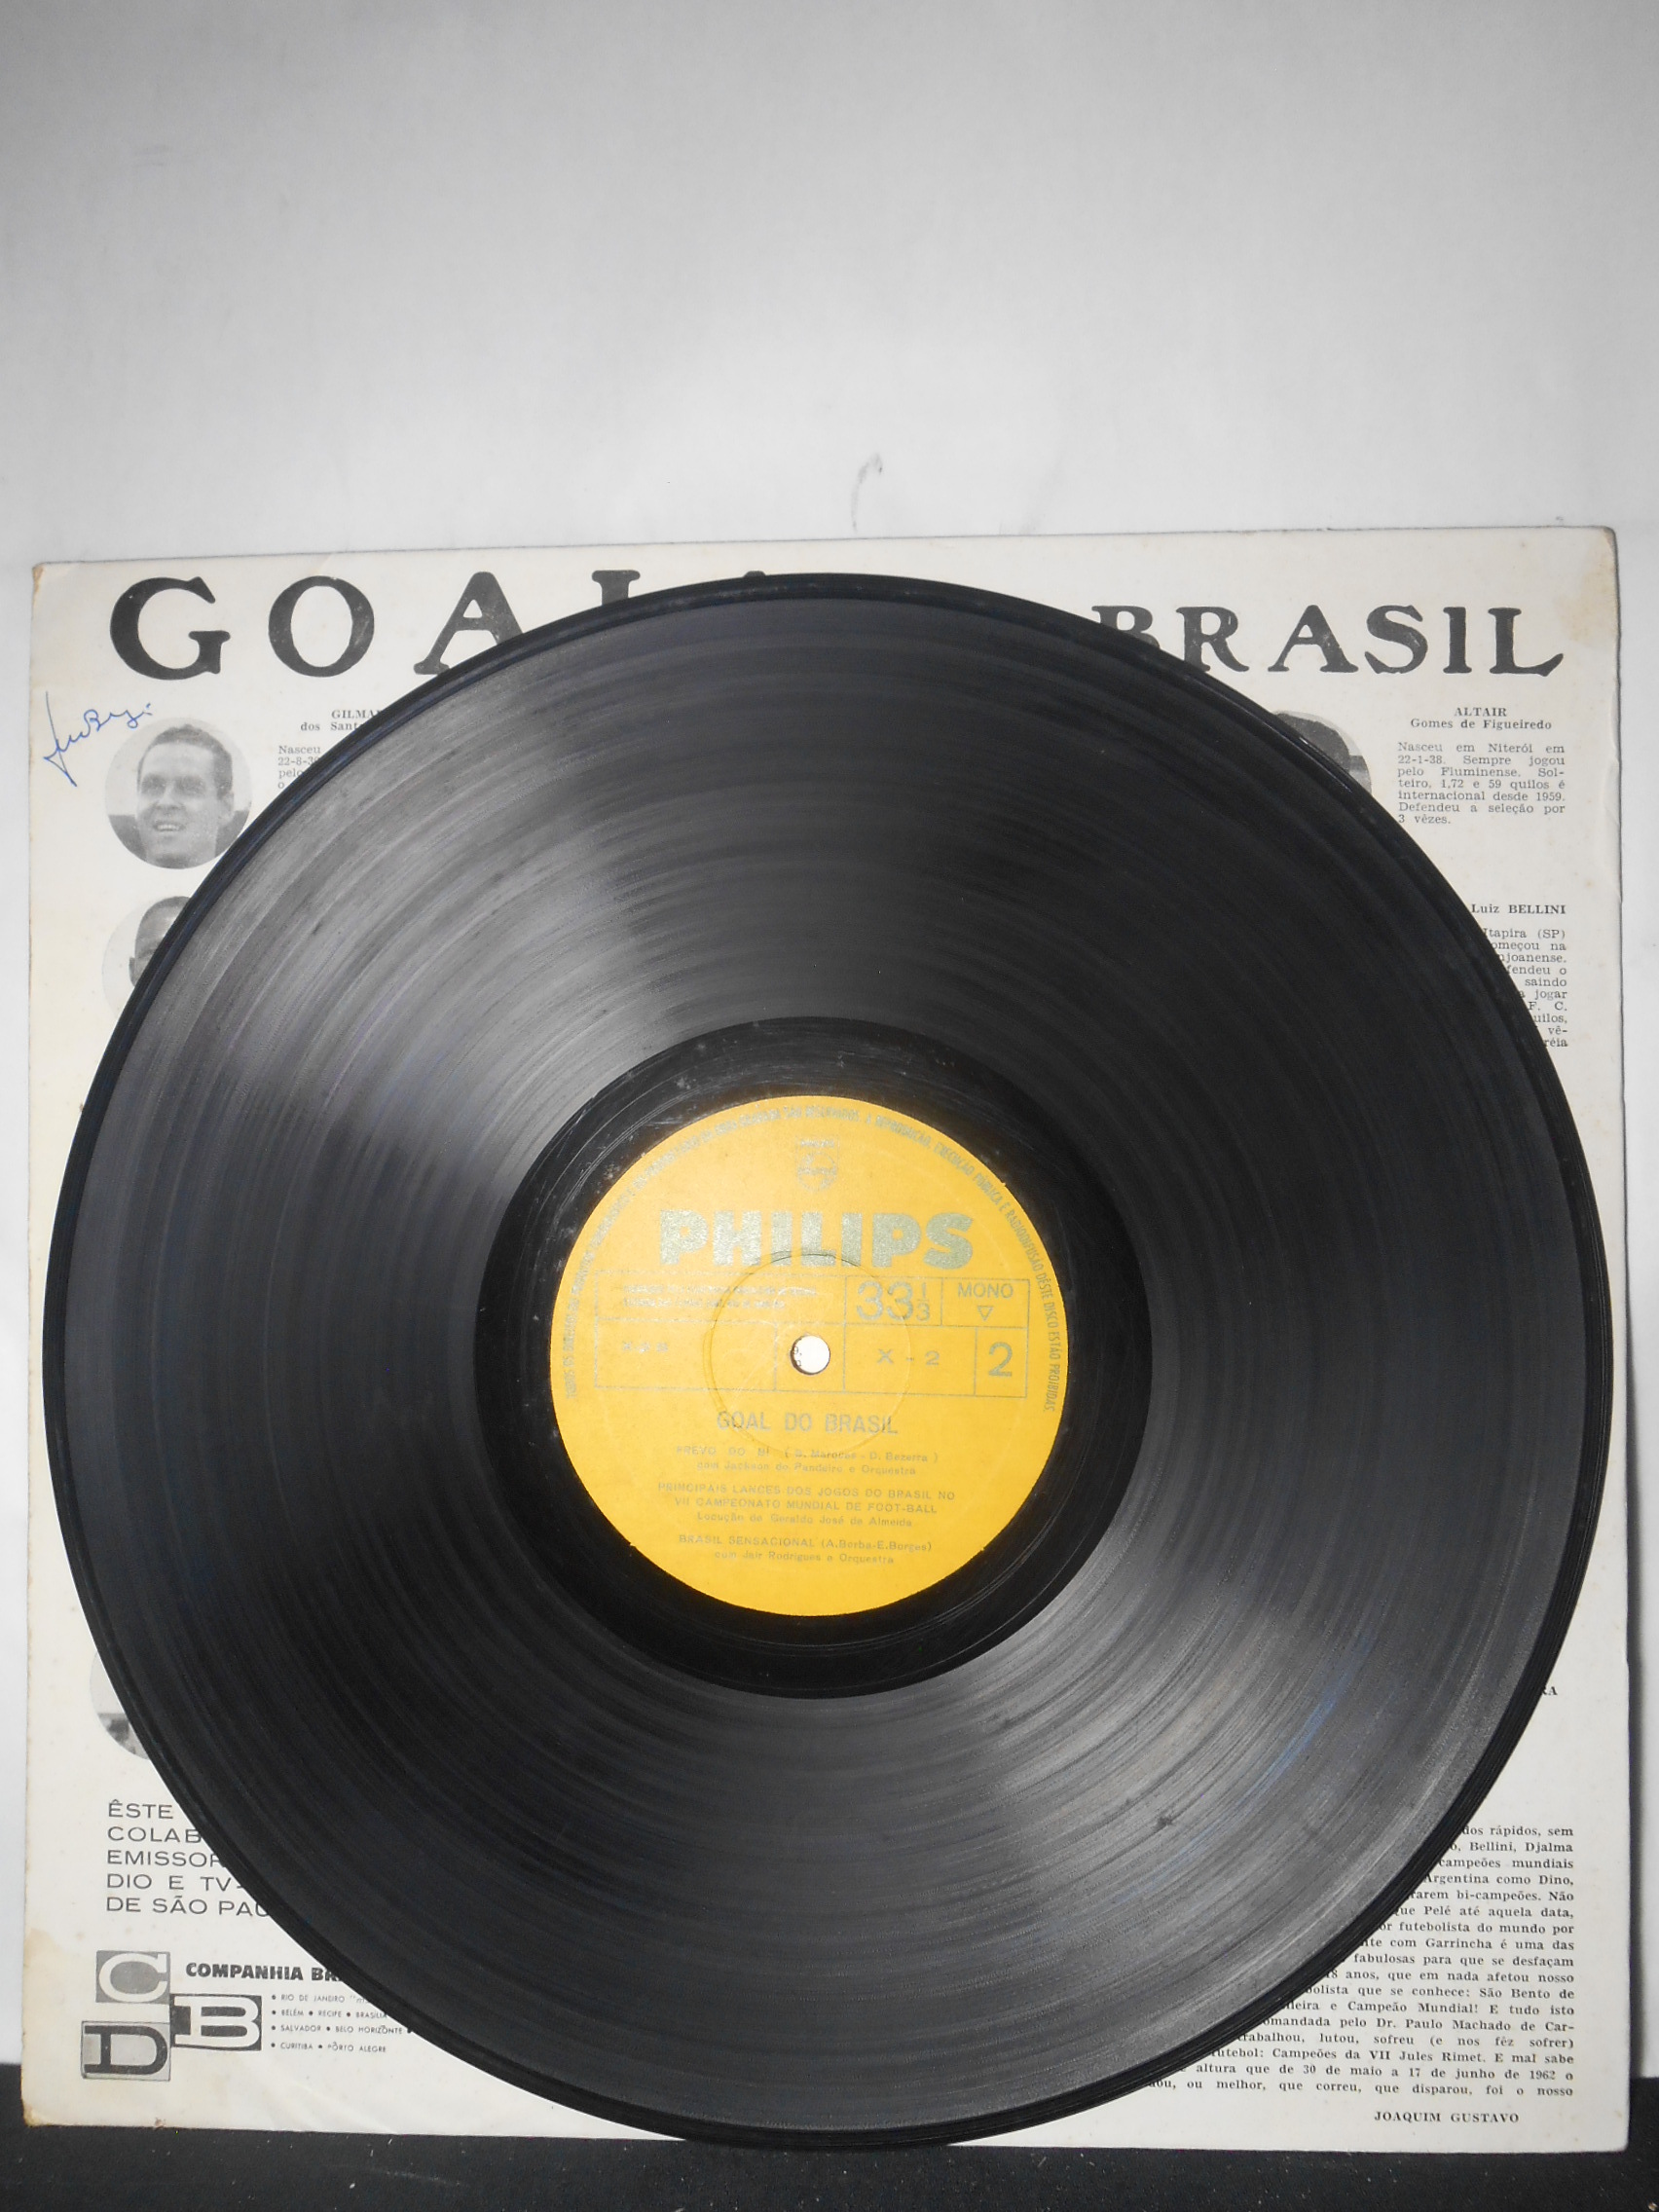 Vinil - Goal do Brasil